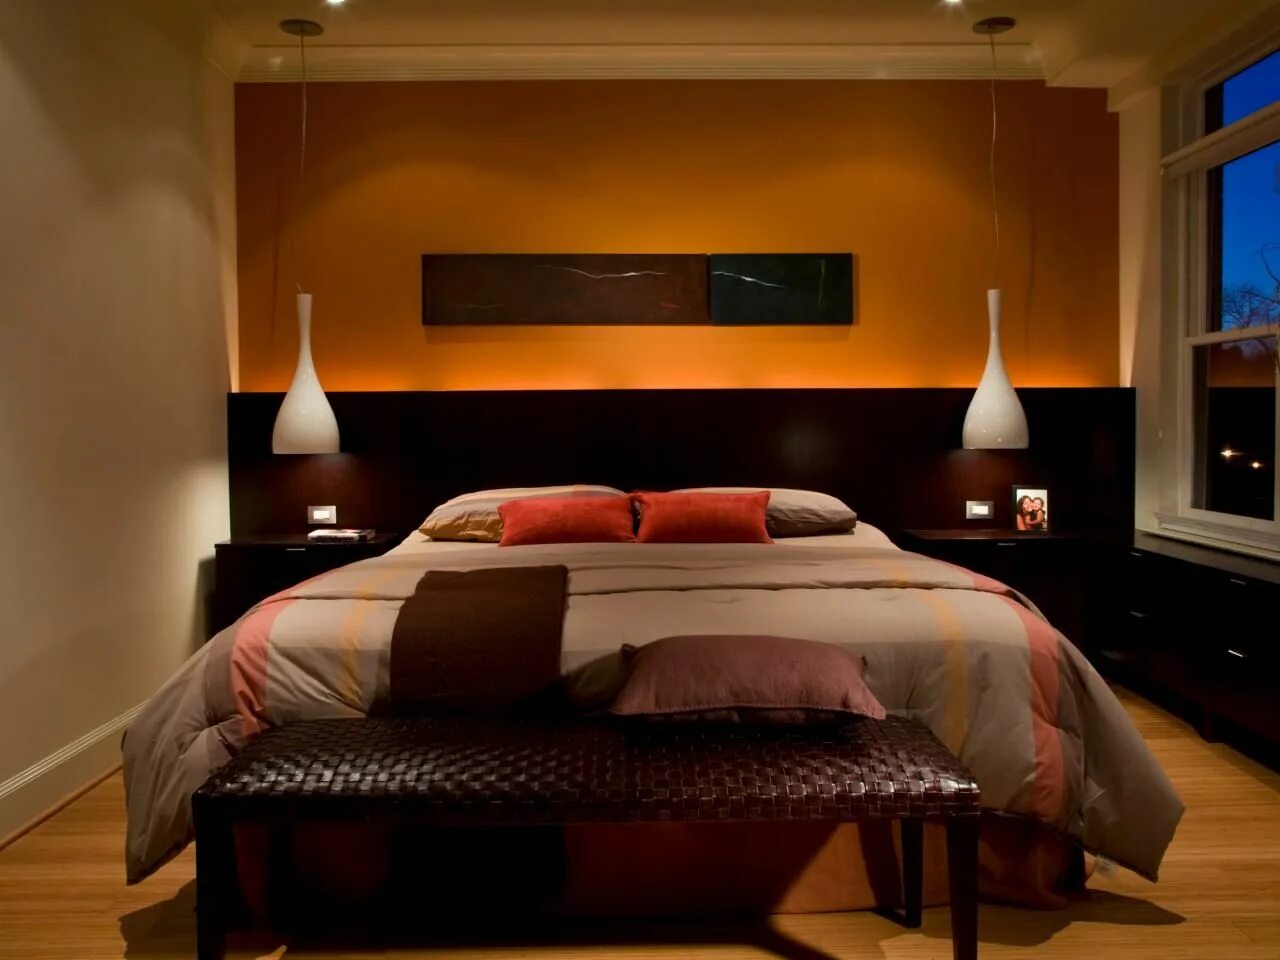 Спальня в темном цвете. Спальня в оранжевых тонах. Спальня в коричневых тонах. Спальня в коричневом цвете. Спальня в терракотовых тонах.